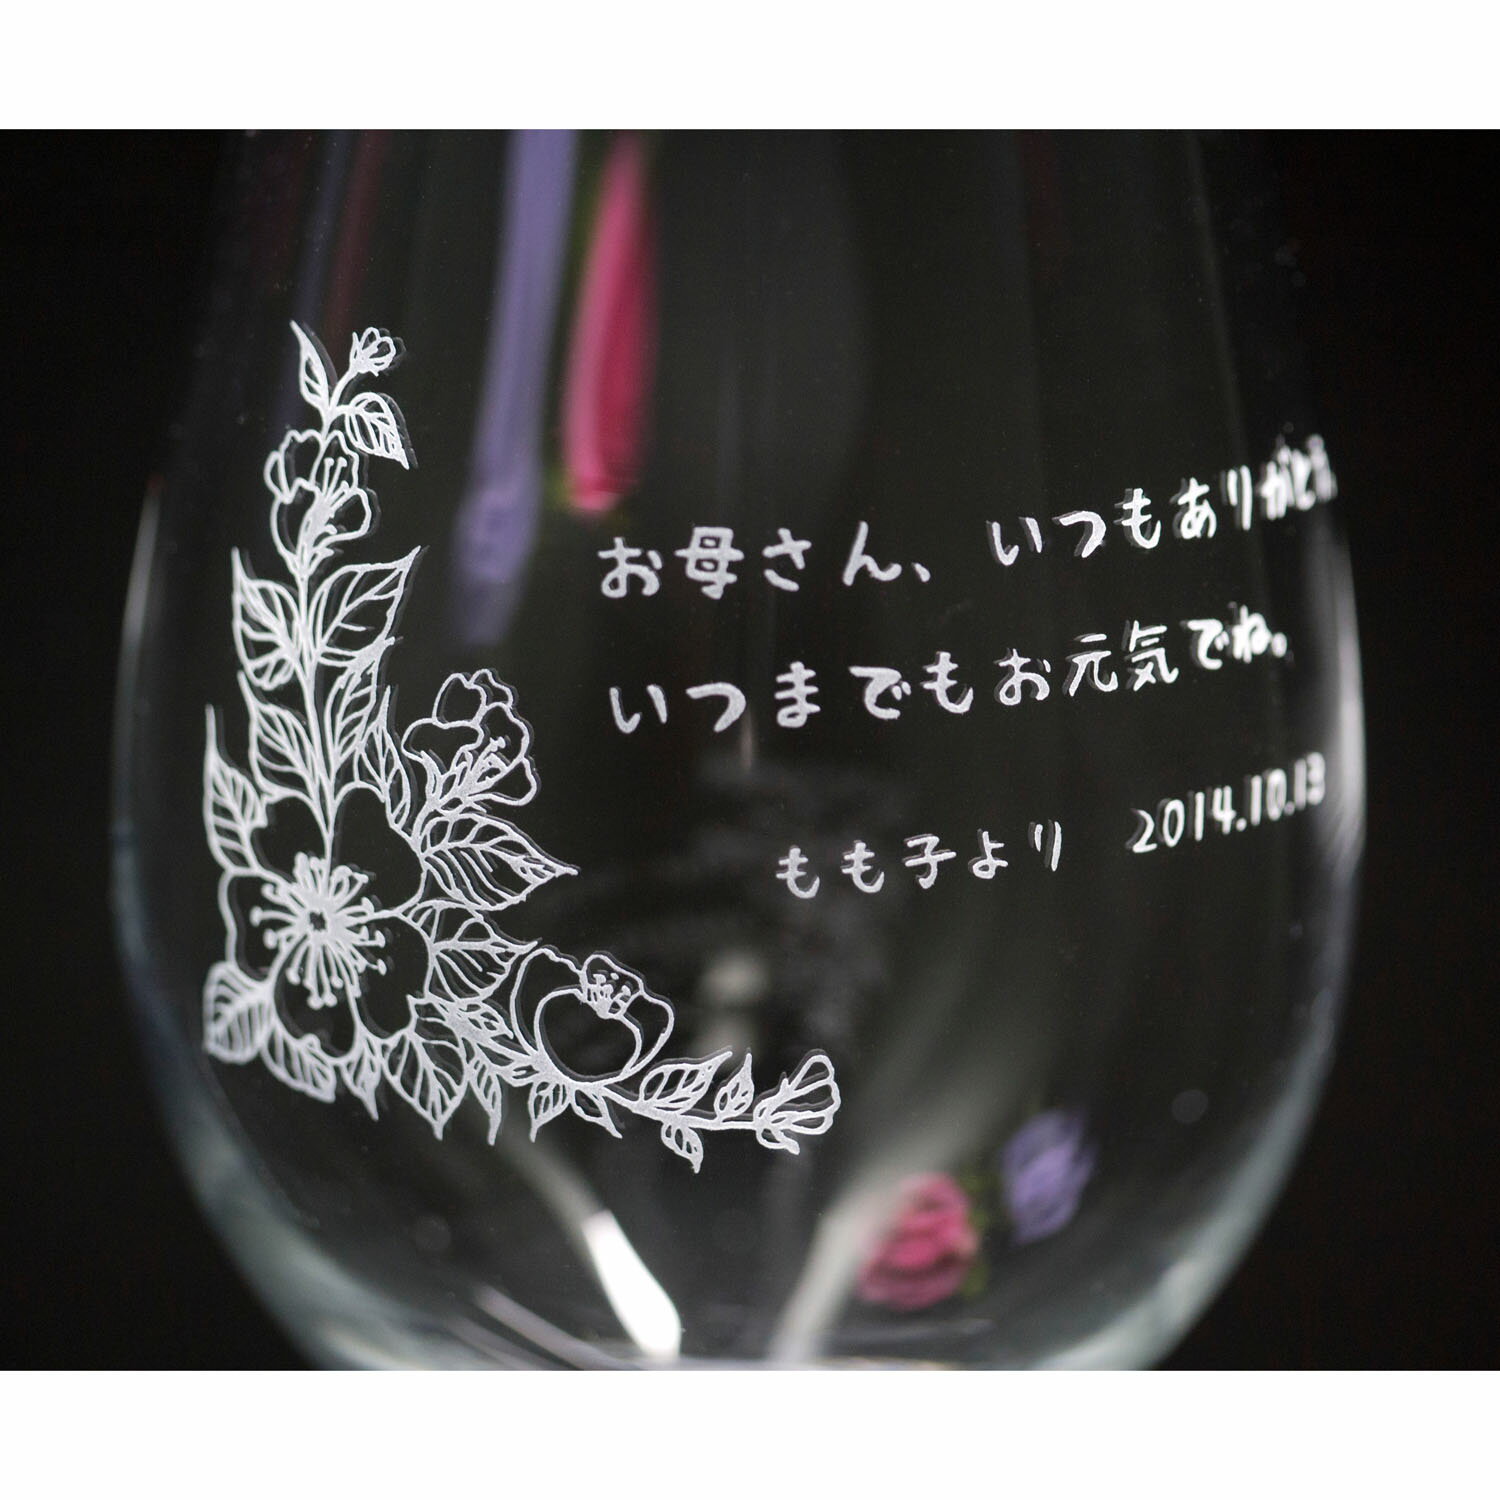 名入れ ワイングラス シュトルツル クリスタルワイングラス カラーステム ギフトボックス サンドブラスト 彫刻 文字入れプレゼント メッセージグラス